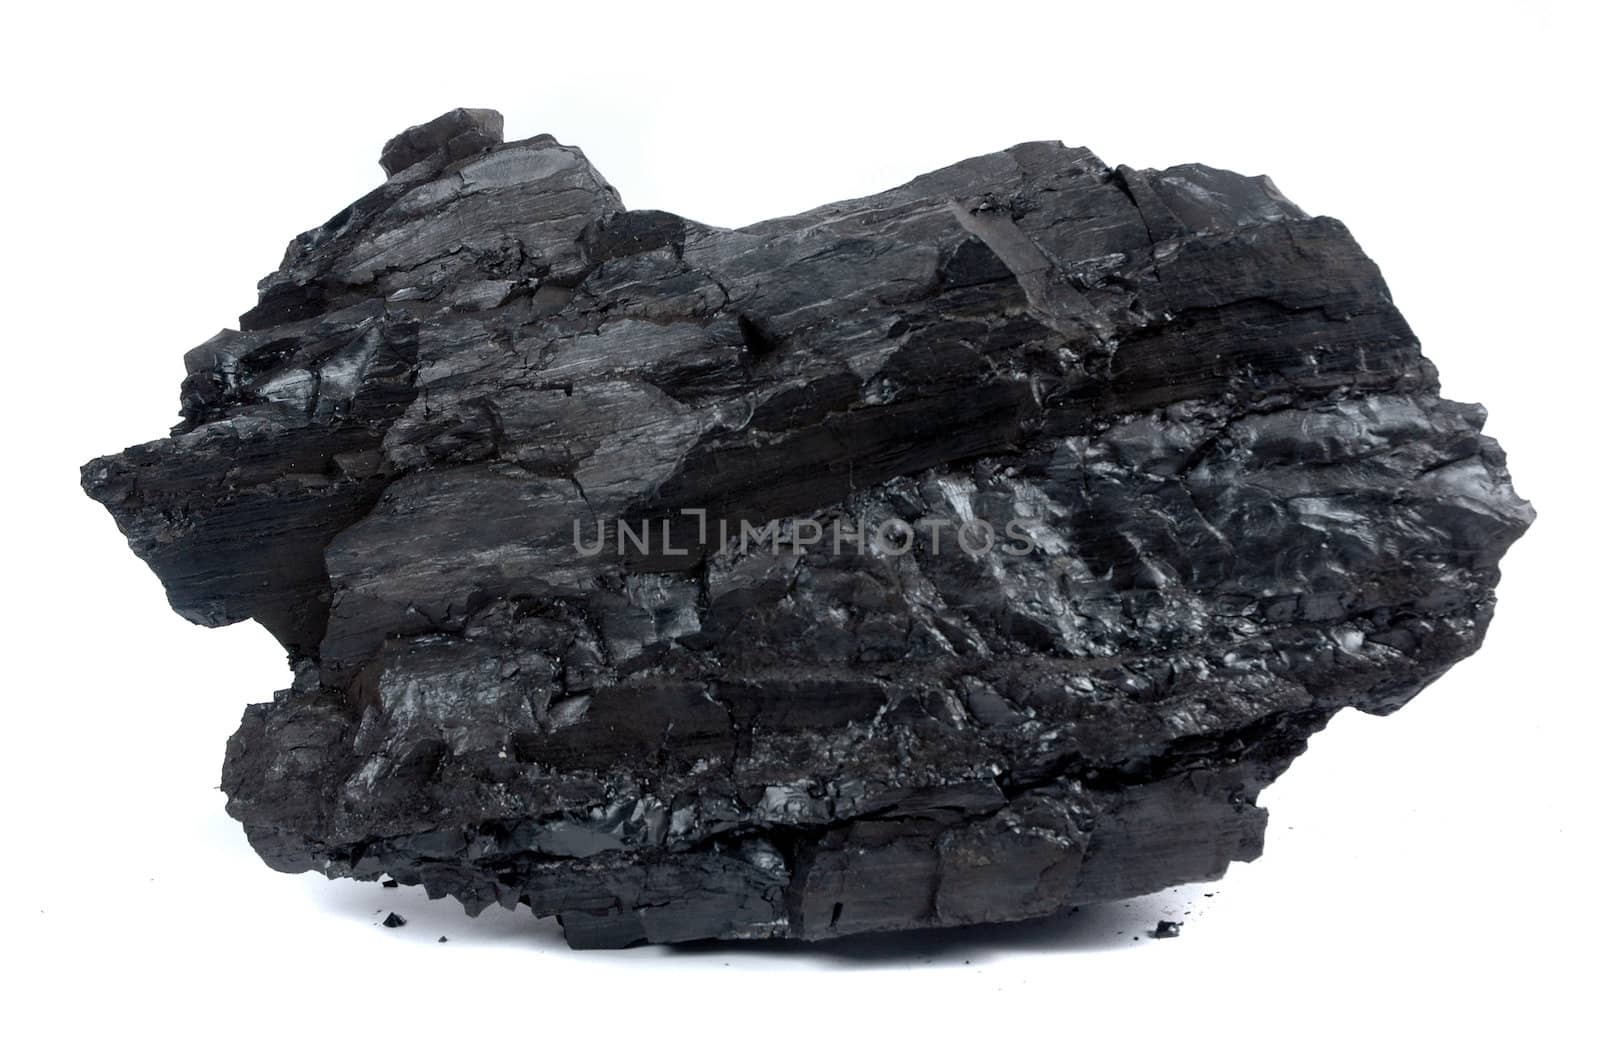 a big lump of coal by antonihalim